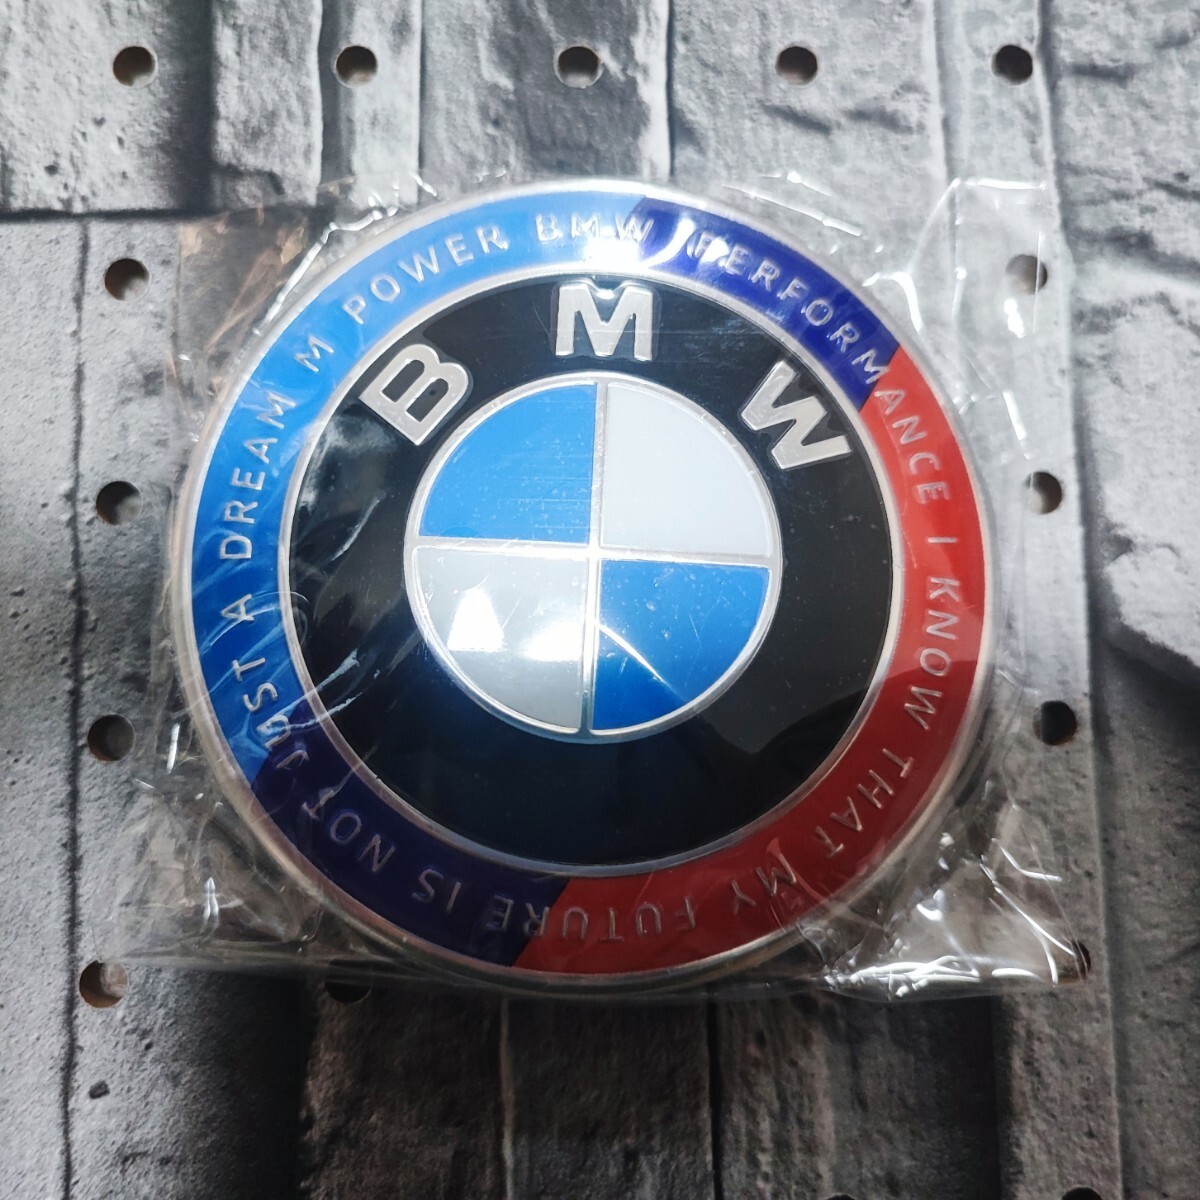 BMW リアエンブレム 74mm【Limited edition】リミテッドエディション MPerformance MSport MPower